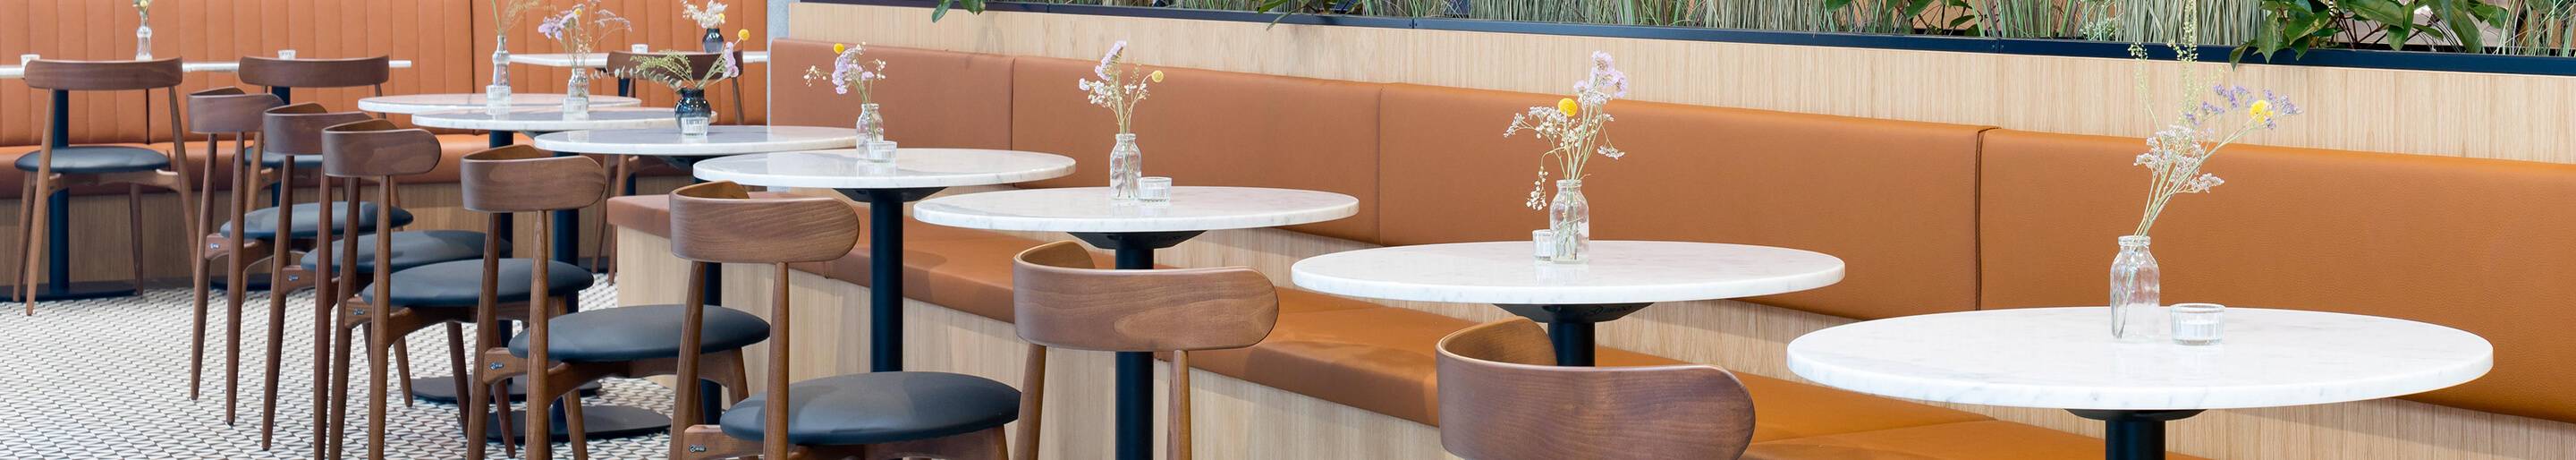 Tables pour votre restaurant ou hôtel